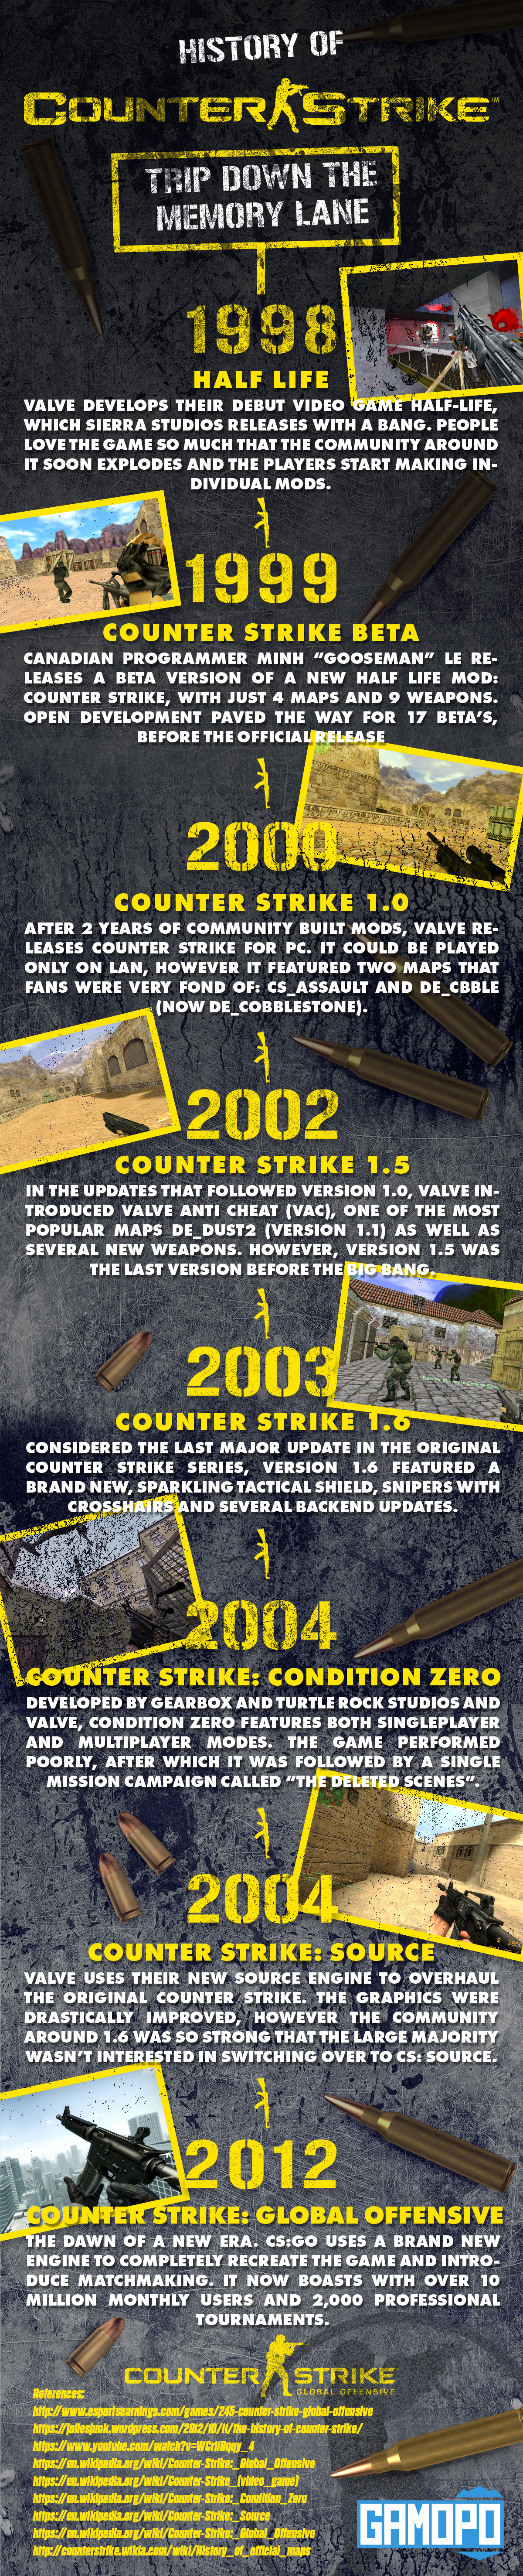 Geschiedenis van Counter Strike - Infographic